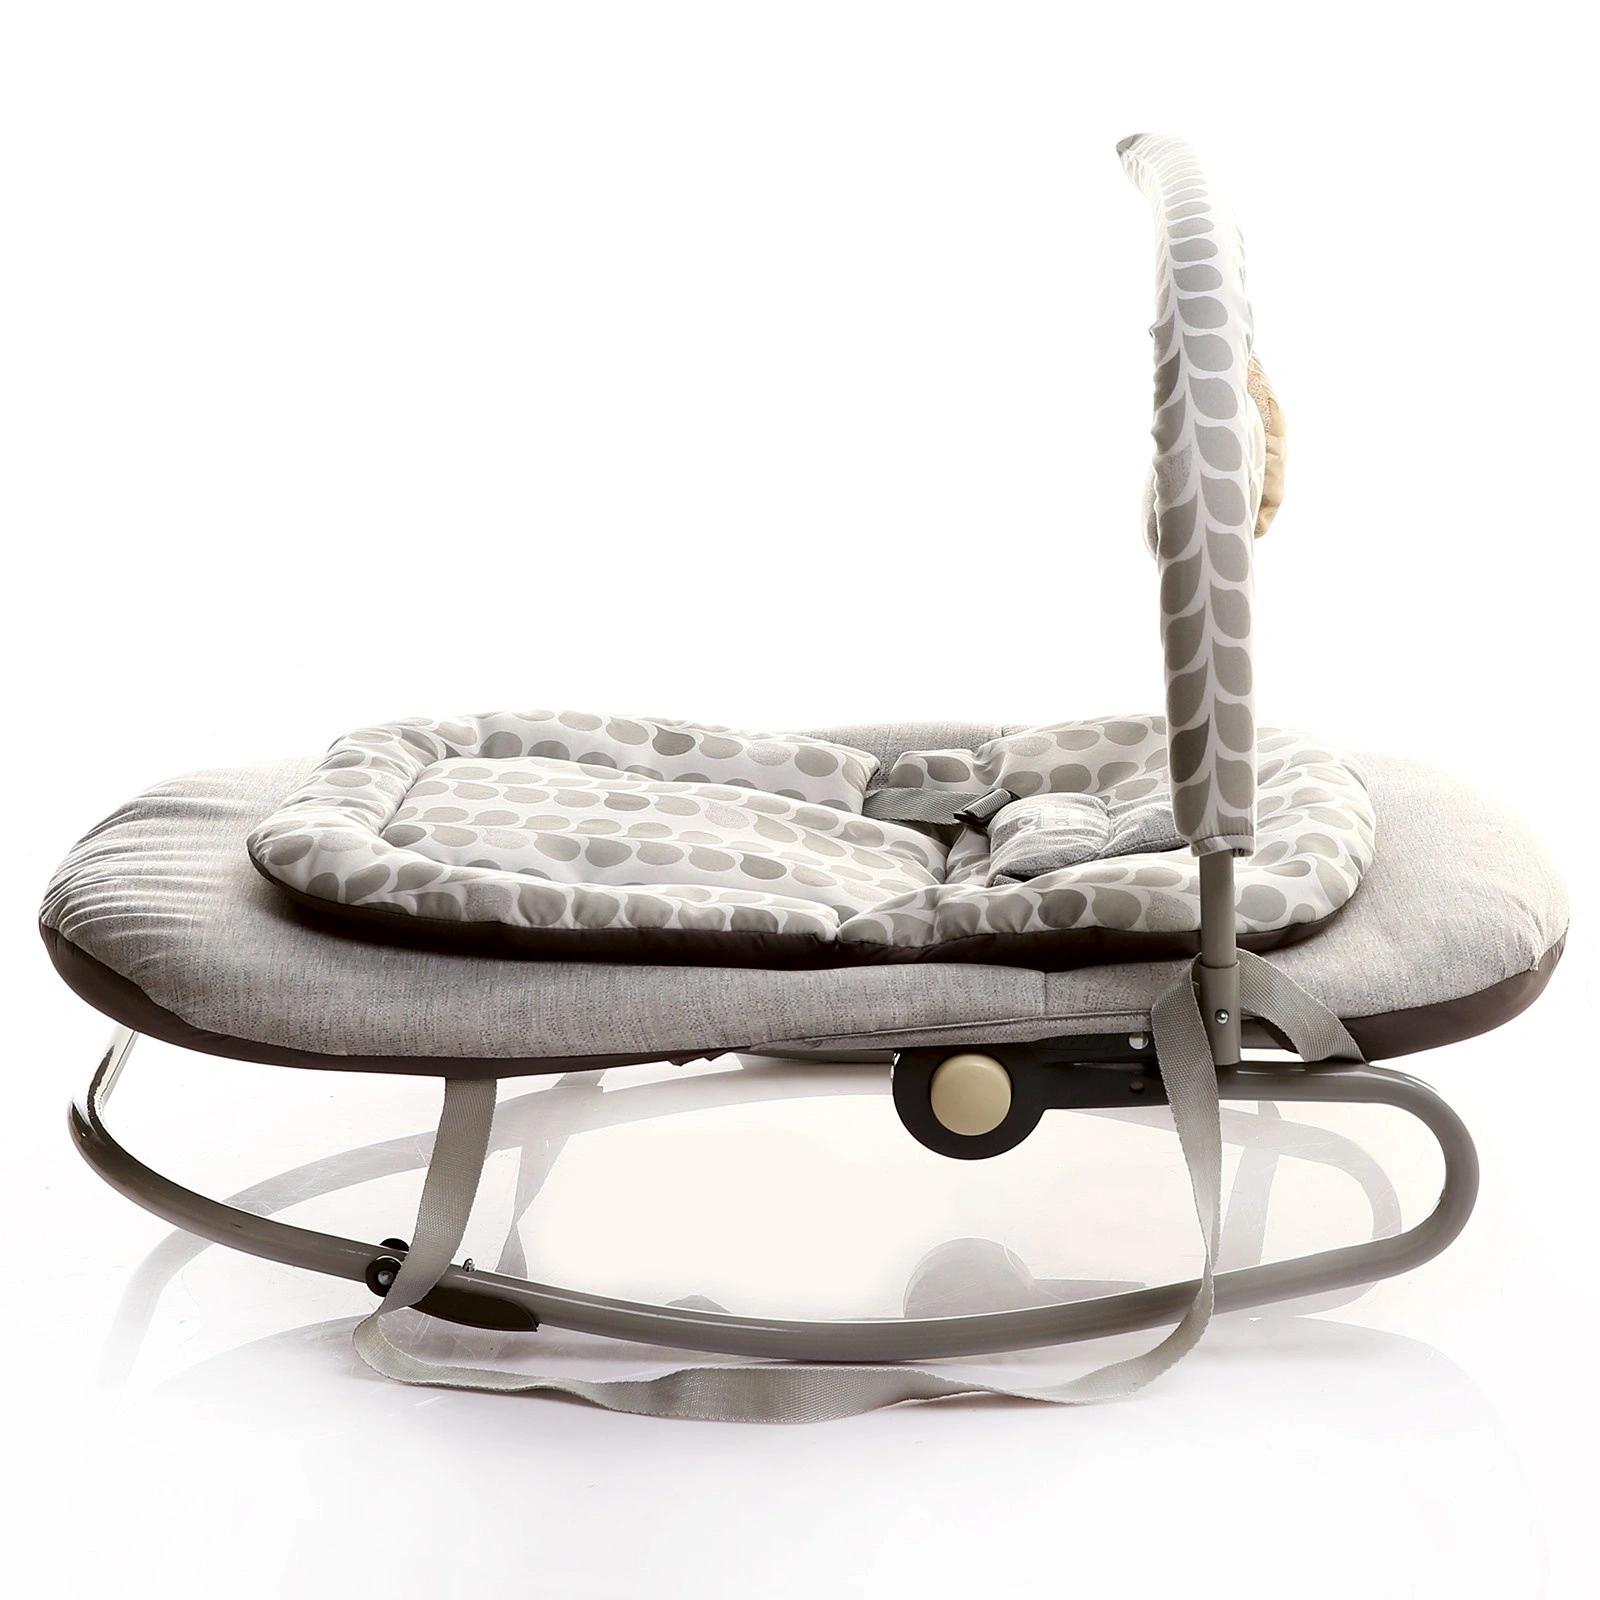 Шезлонг для новорожденных DEDE детское кресло качалка - фото 6